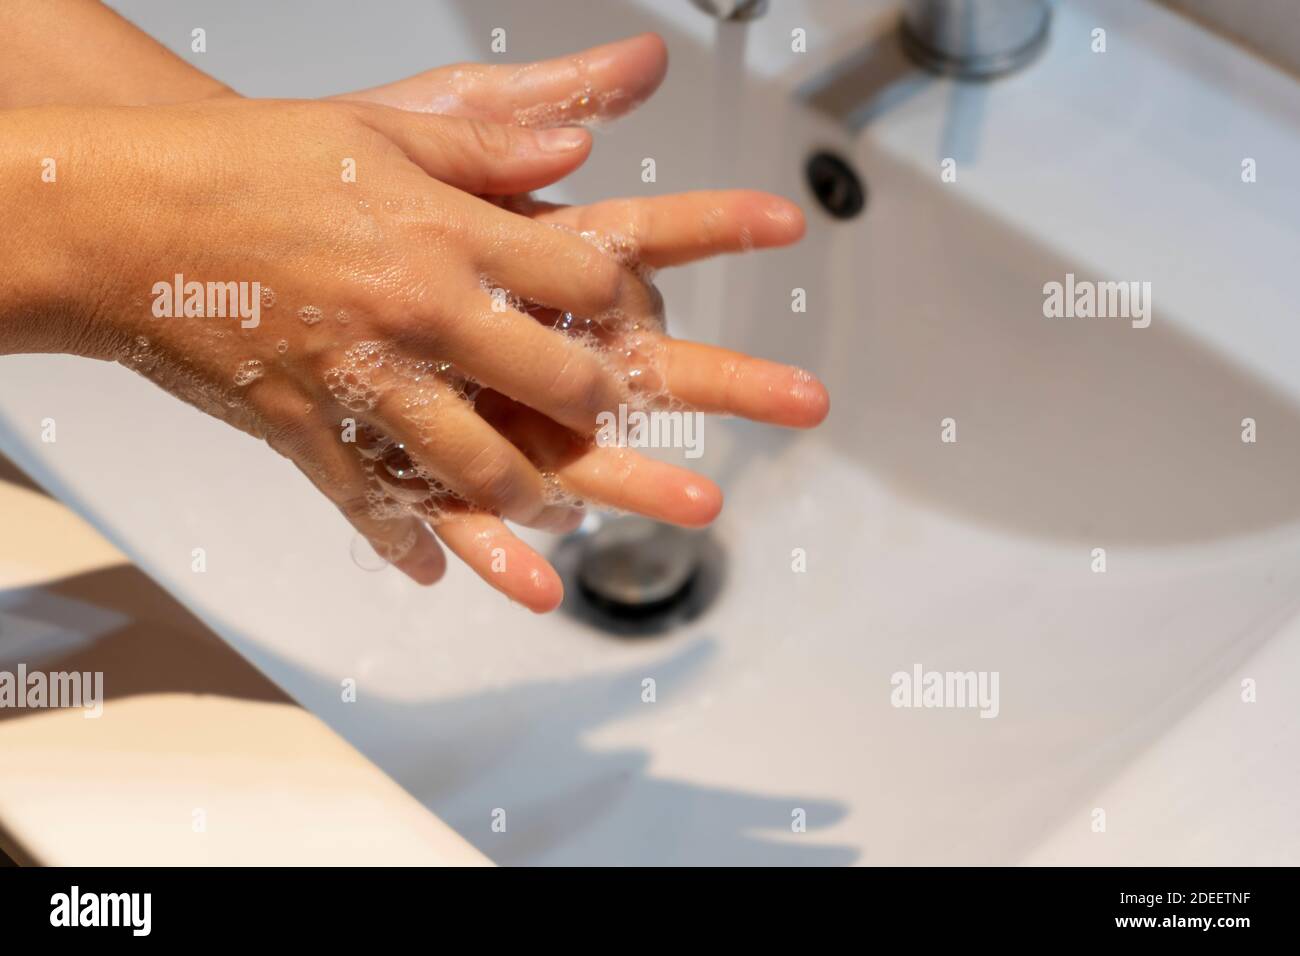 Donna lavando le mani con sapone in concetto sink.Hygiene, protezione preventiva contro germi, coronavirus o covid-19. Foto Stock